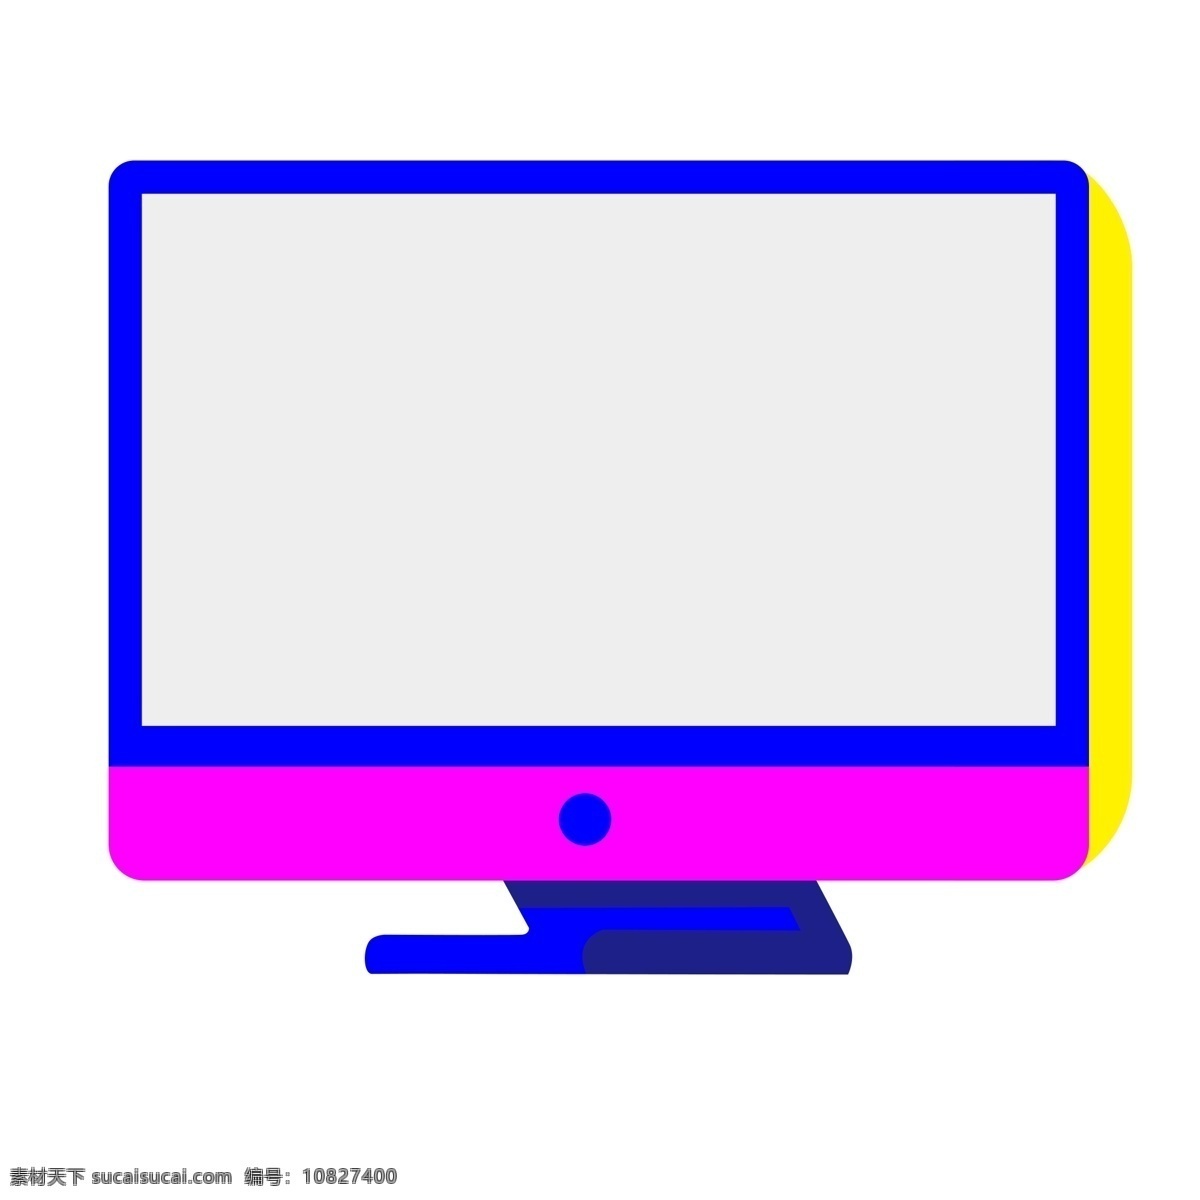 台式 扁平化 商务 电脑 侧面图 免 扣 显示器 科技 键盘 鼠标 套装 桌面 紫色 立体 阴影 矢量 侧视 png免扣